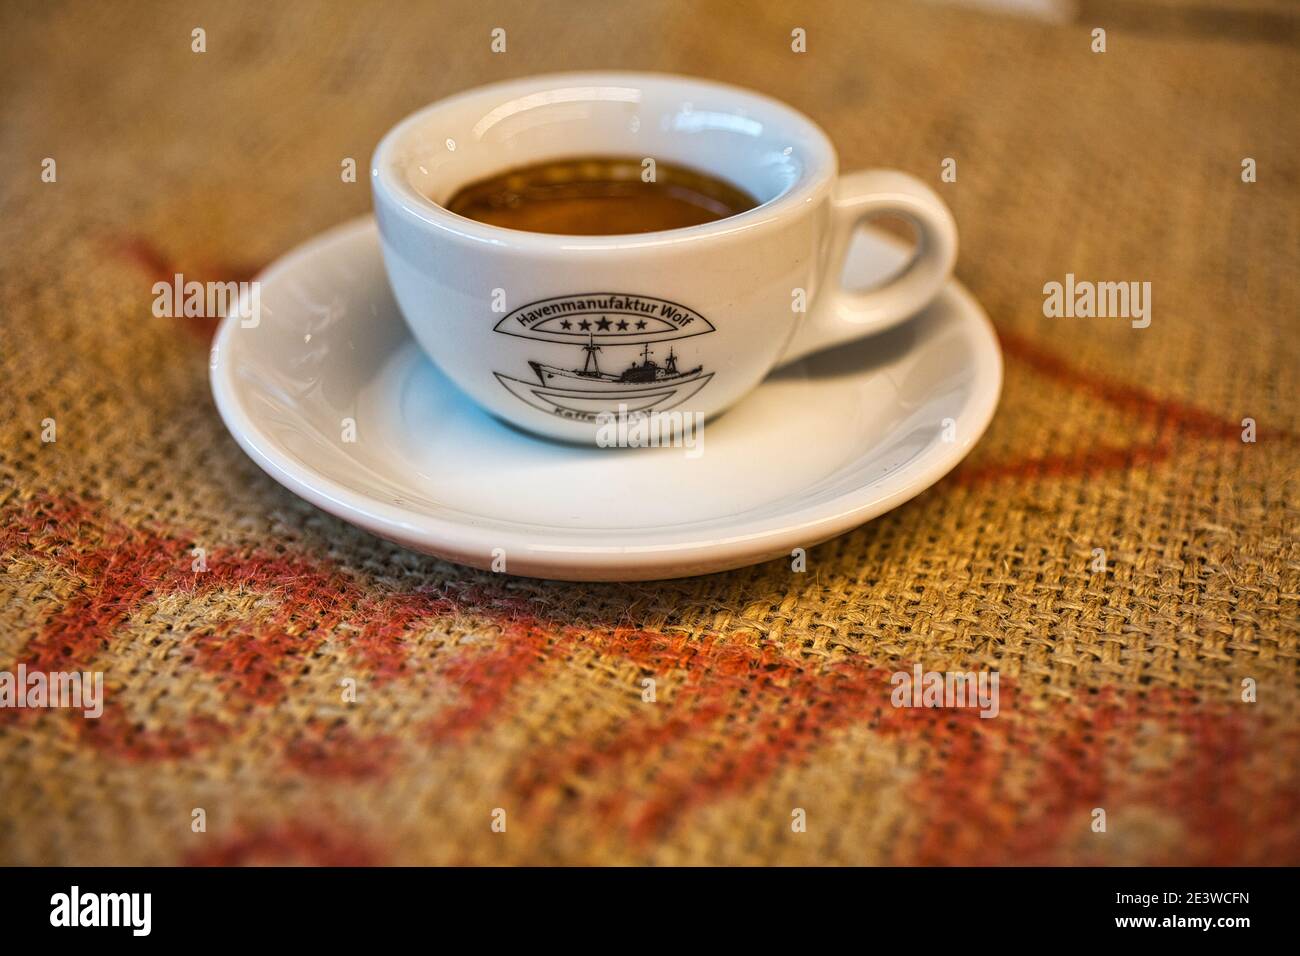 Gros plan d'un espresso dans une tasse sur un sac à grains de café Banque D'Images